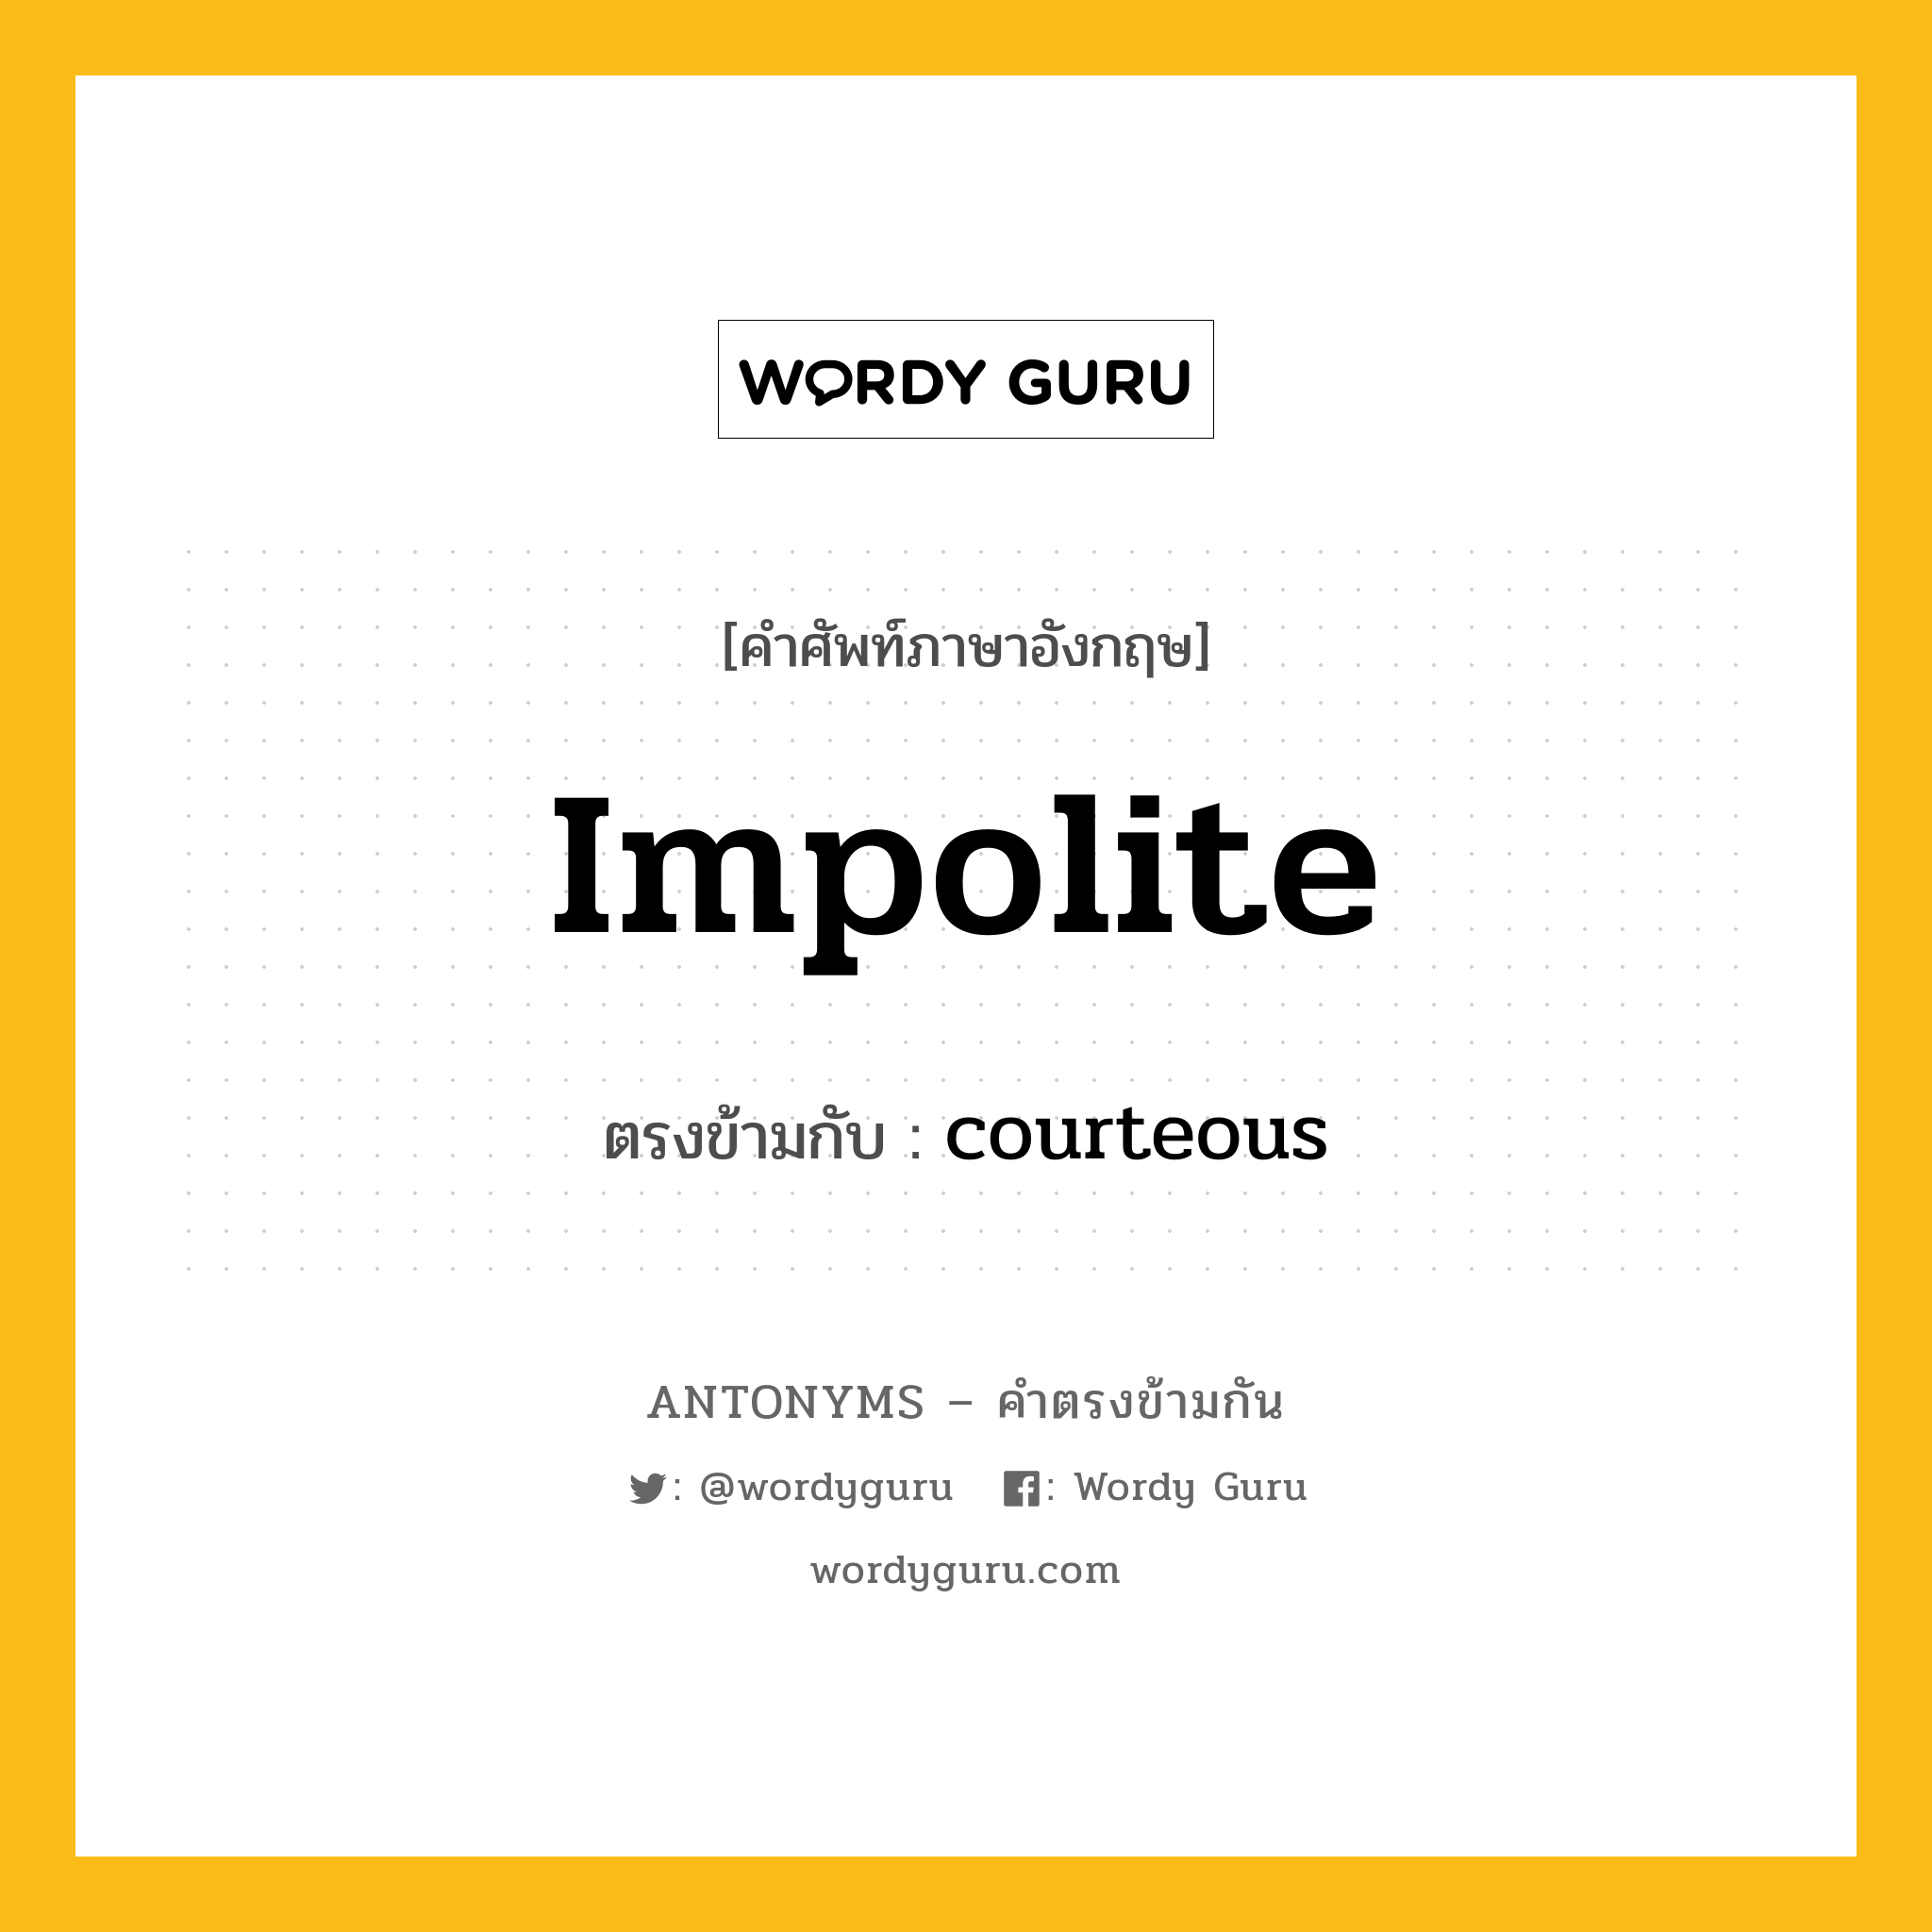 impolite เป็นคำตรงข้ามกับคำไหนบ้าง?, คำศัพท์ภาษาอังกฤษ impolite ตรงข้ามกับ courteous หมวด courteous